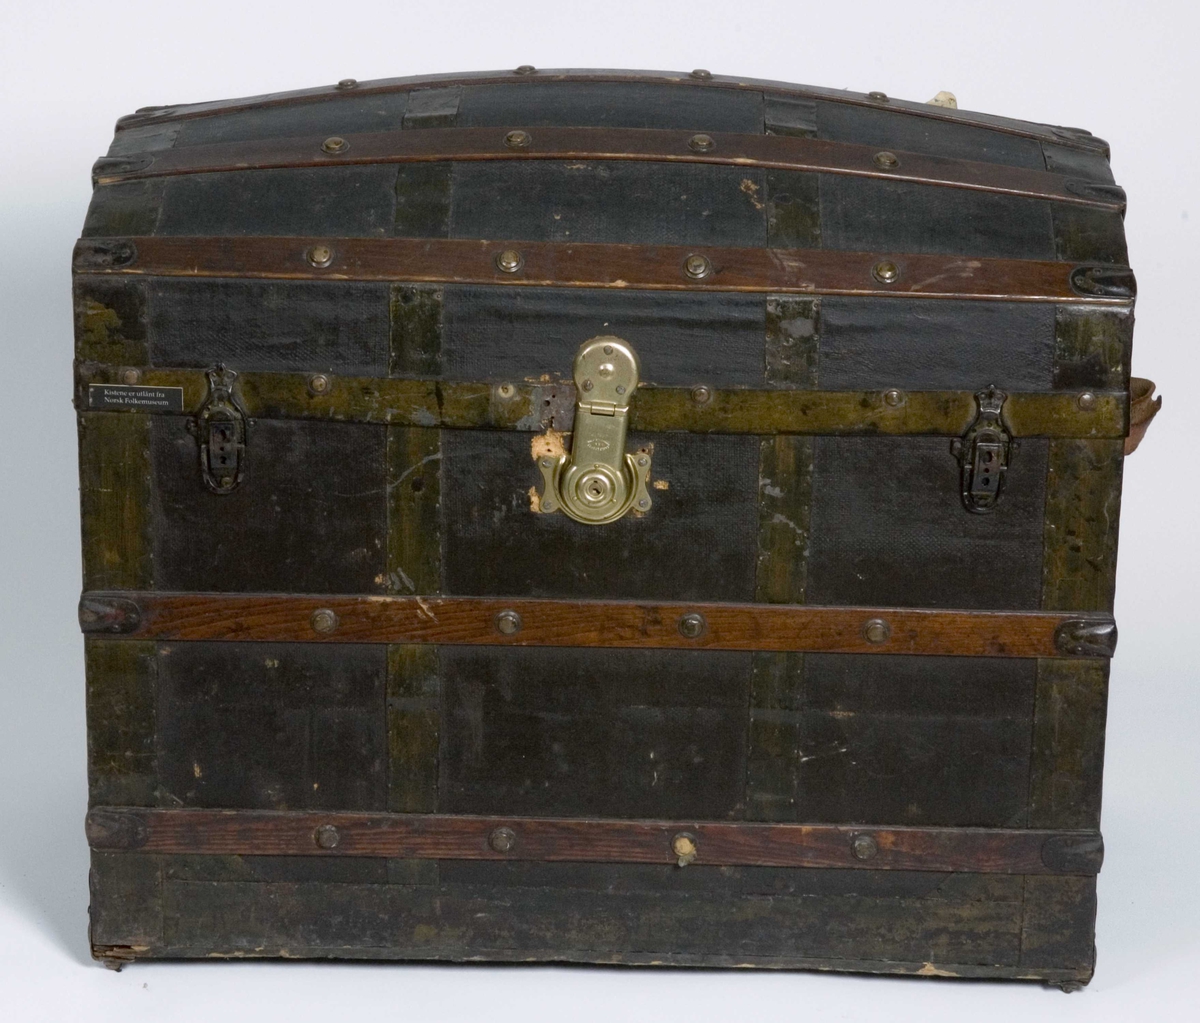 Koffert i kisteform med buet lokk, beslått med jernblikk og trelister. Innvendig utkledd med papir og tekstil.